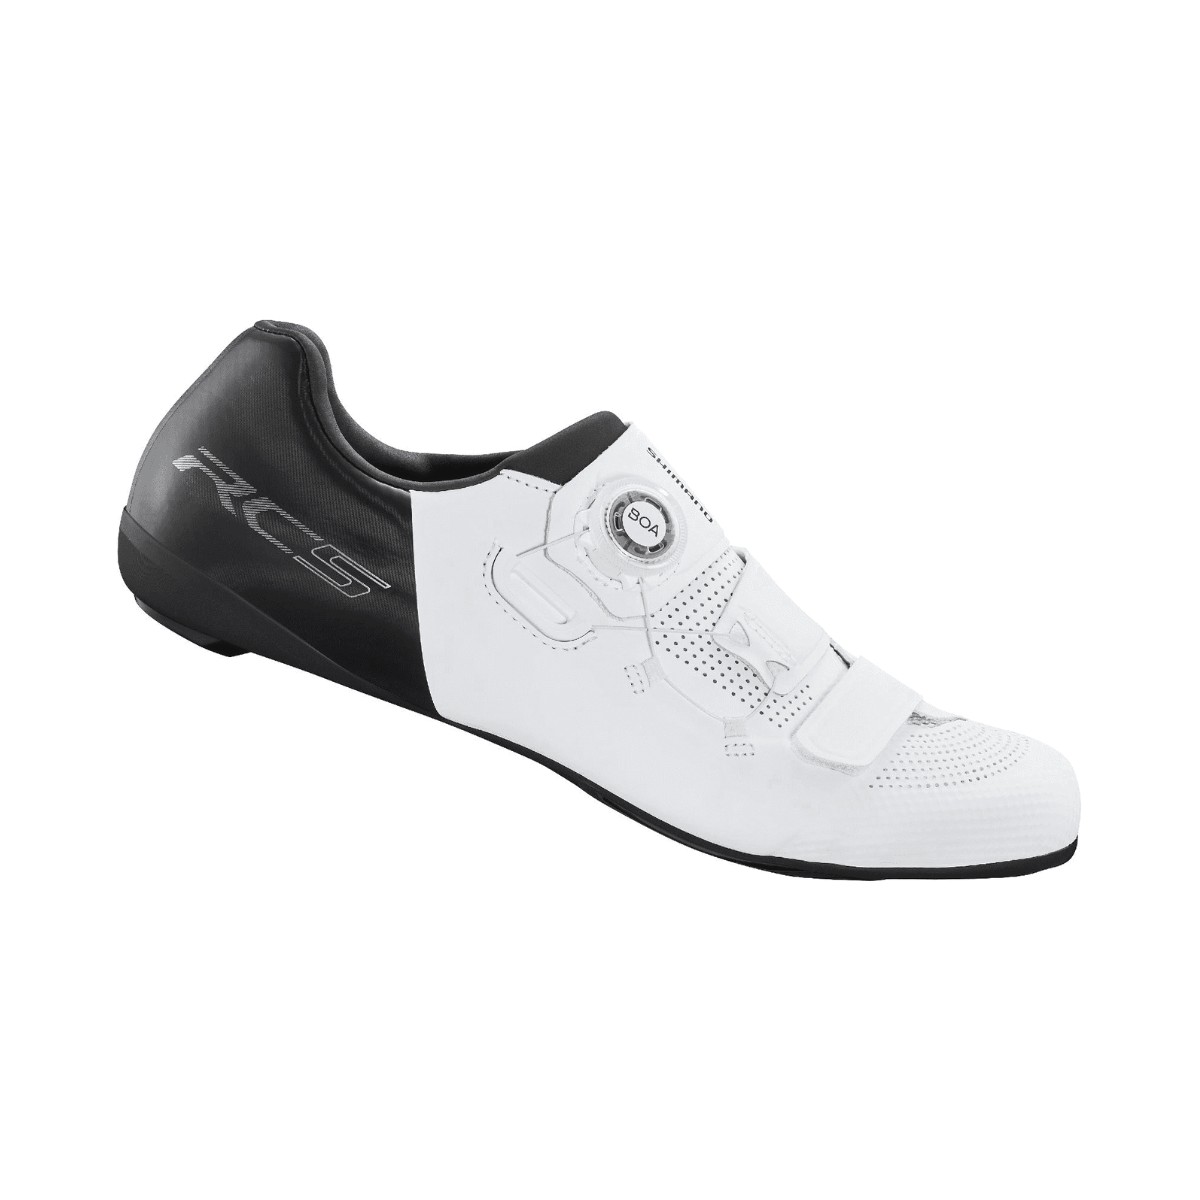 Zapatillas Shimano RC502 Blanco, Talla 39 - EUR